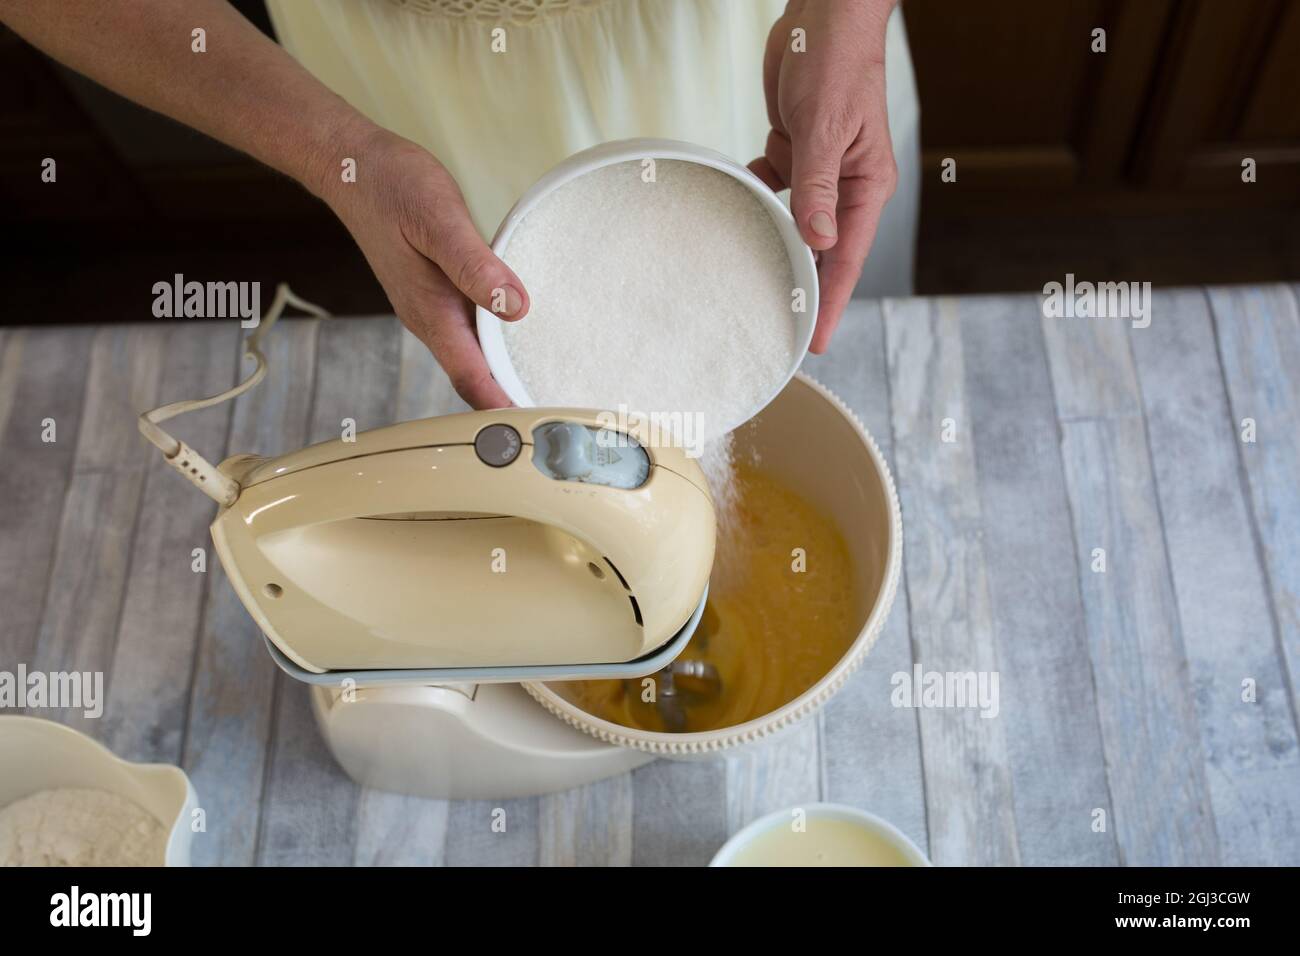 Processo di preparazione della torta. Le mani delle donne aggiungono zucchero al recipiente del mixer per preparare l'impasto. Ricetta passo per torta al cioccolato. Serie. Concetto di cottura. Foto Stock